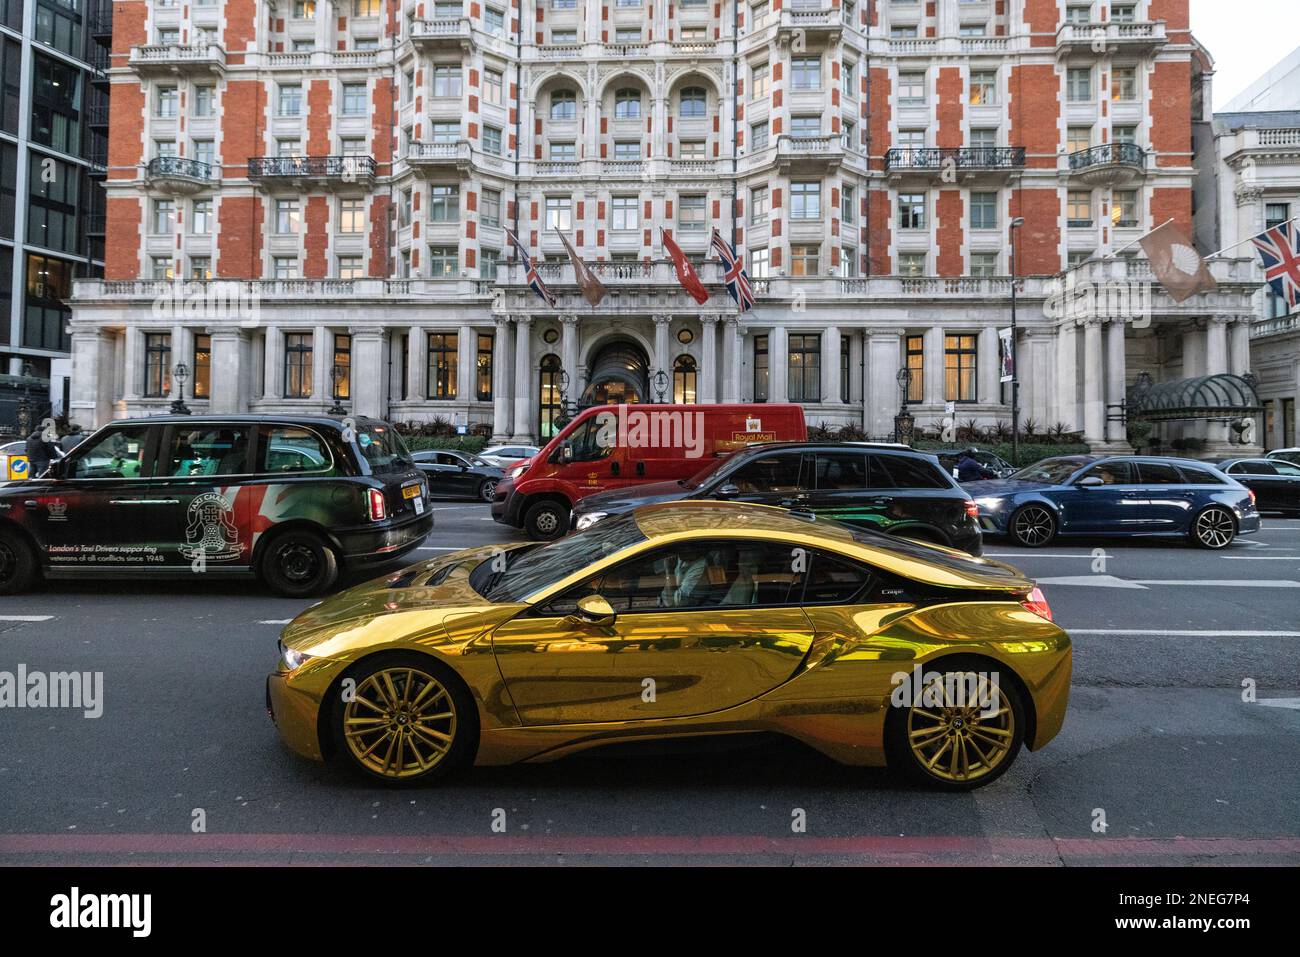 La voiture de luxe BMW coupé Or a pris le dessus dans le trafic des heures de pointe le long de Knightsbridge, centre de Londres, Angleterre, Royaume-Uni Banque D'Images